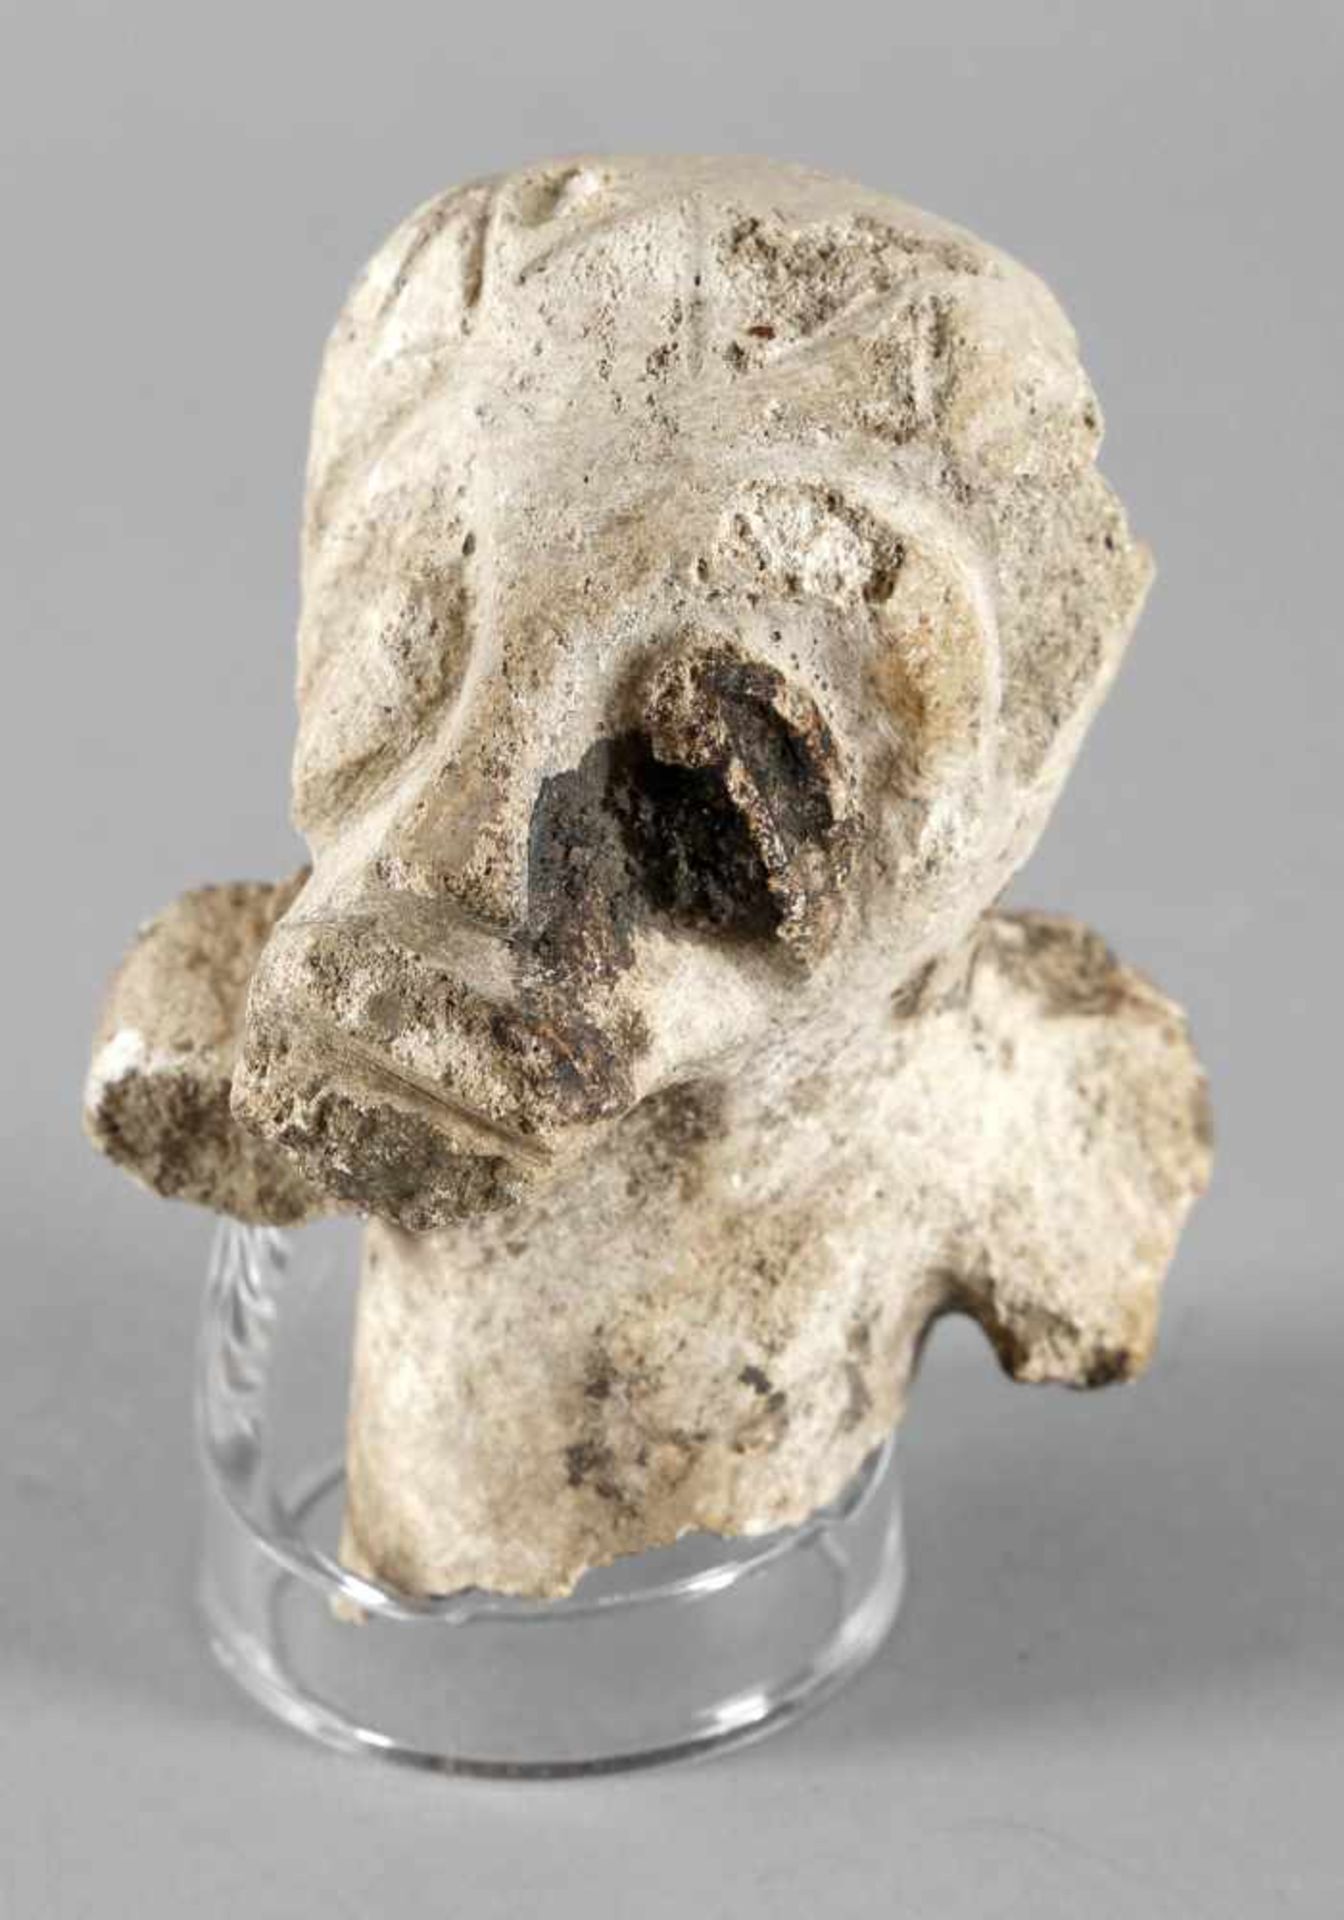 Kopf (Fragment) aus einem Knochen geschnitzt, Kultur der Taino, Dominikanische Republik, ca. 1000-